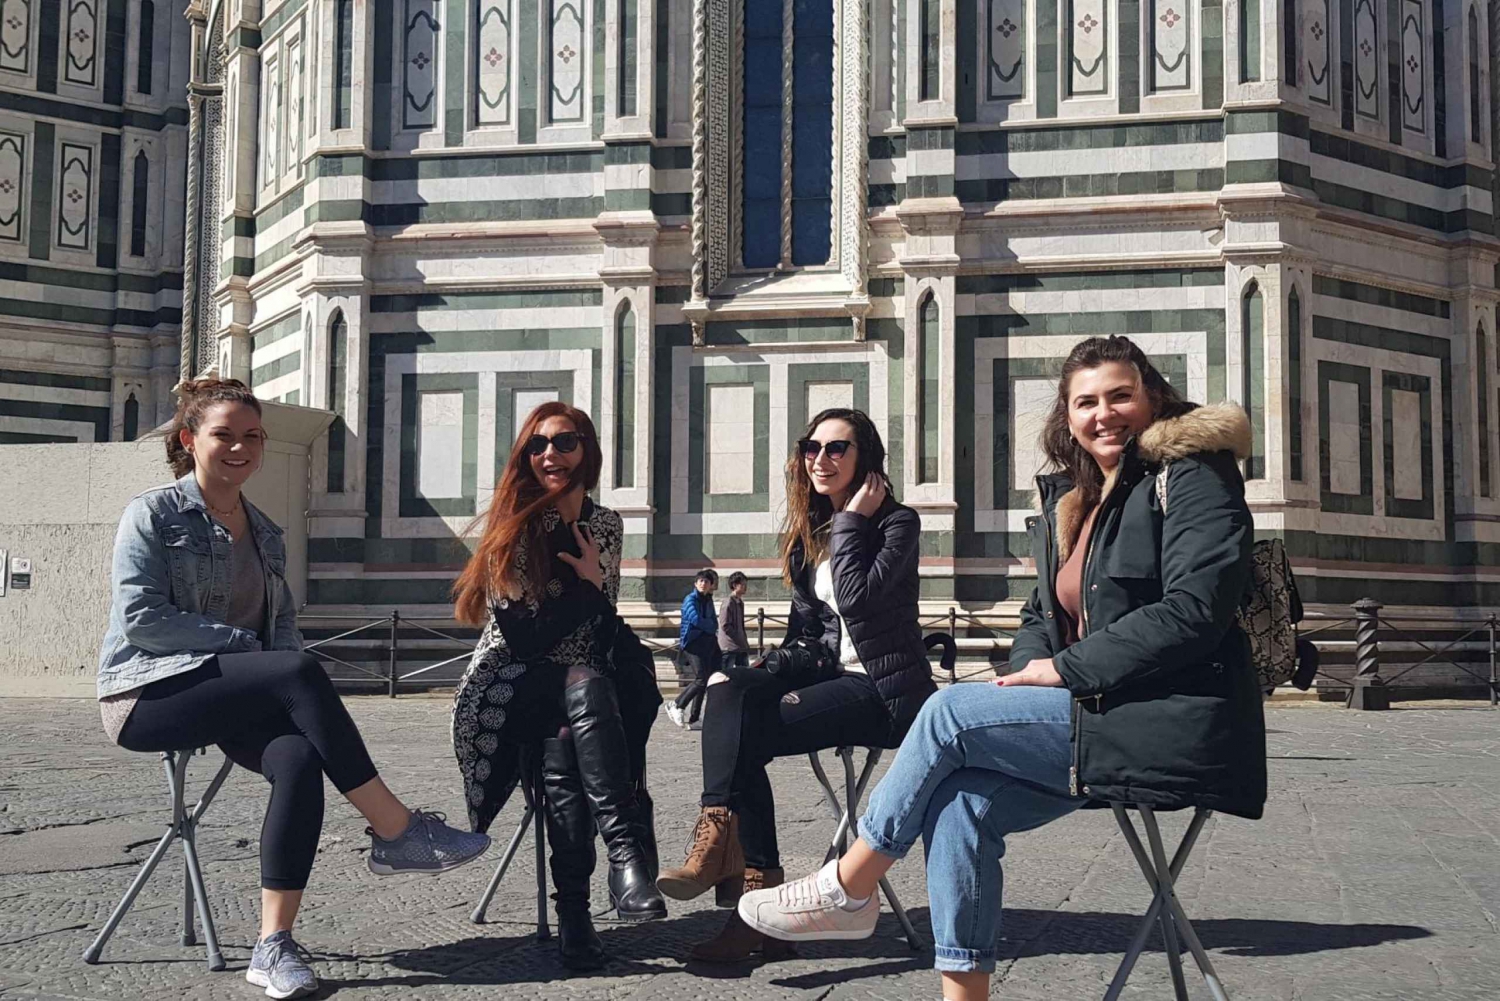 Firenze: Spesiell spasertur med gelato